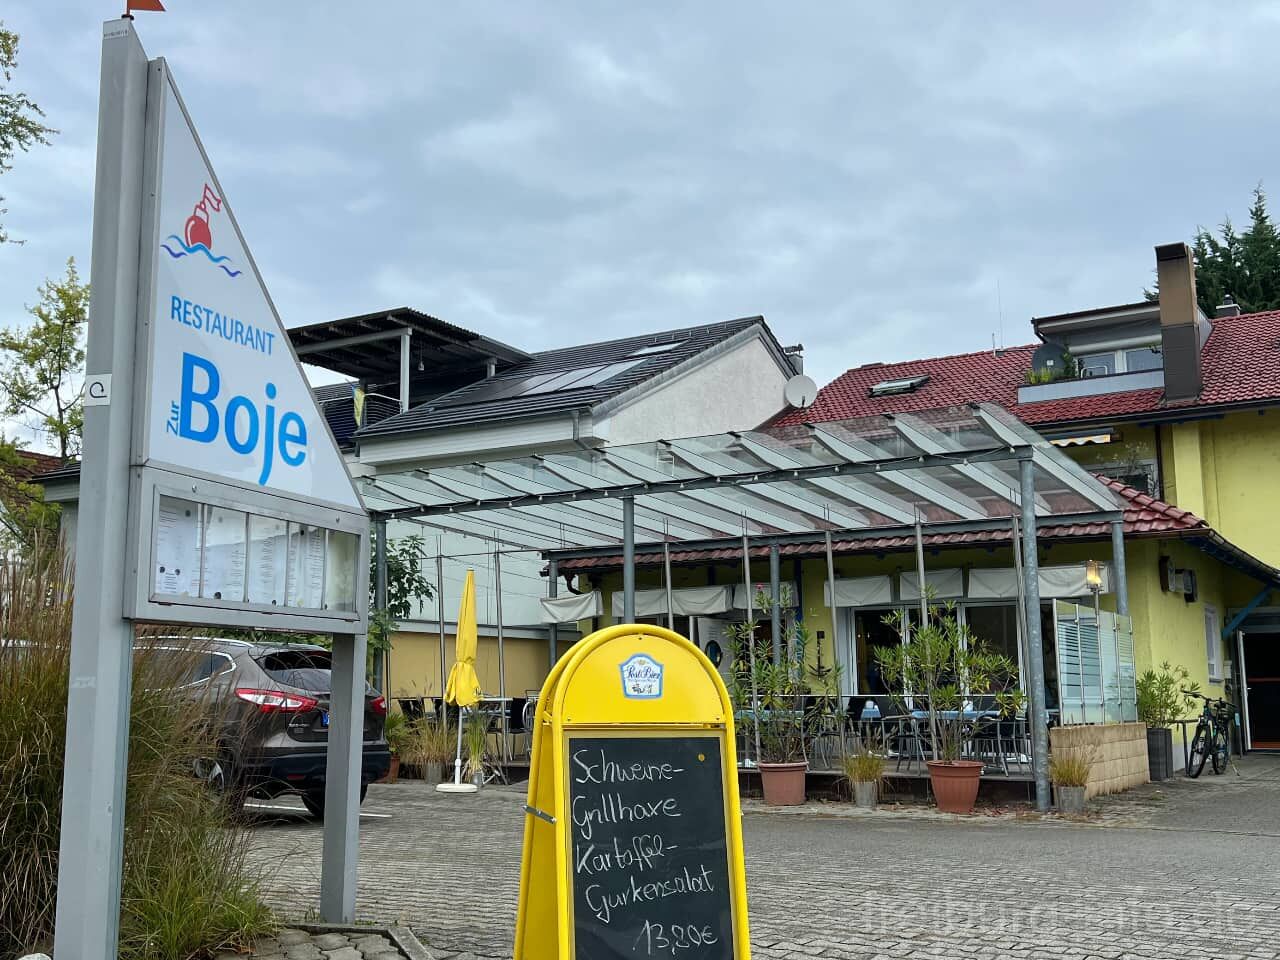 Restaurant "Zur Boje" in Kressbronn am Bodensee